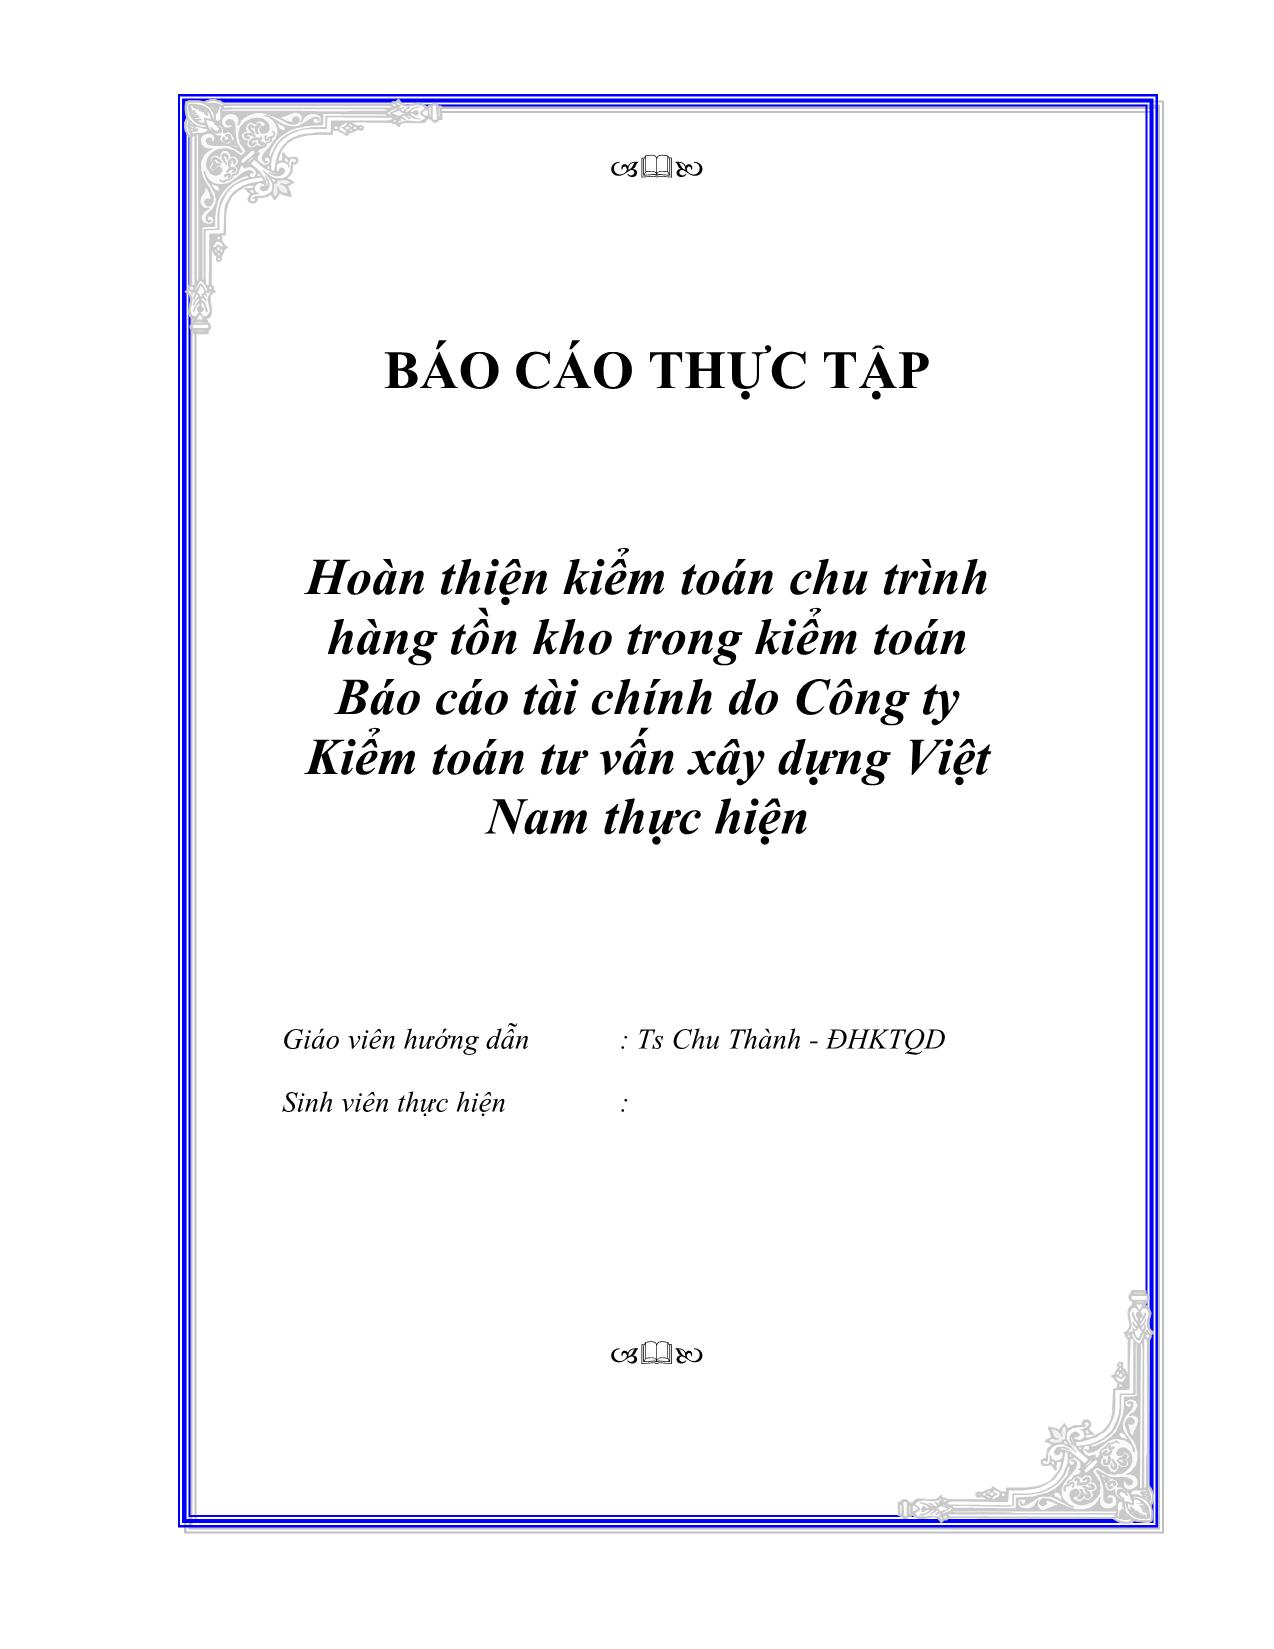 Báo cáo Hoàn thiện kiểm toán chu trình hàng tồn kho trong kiểm toán Báo cáo tài chính do Công ty Kiểm toán tư vấn xây dựng Việt Nam thực hiện trang 1